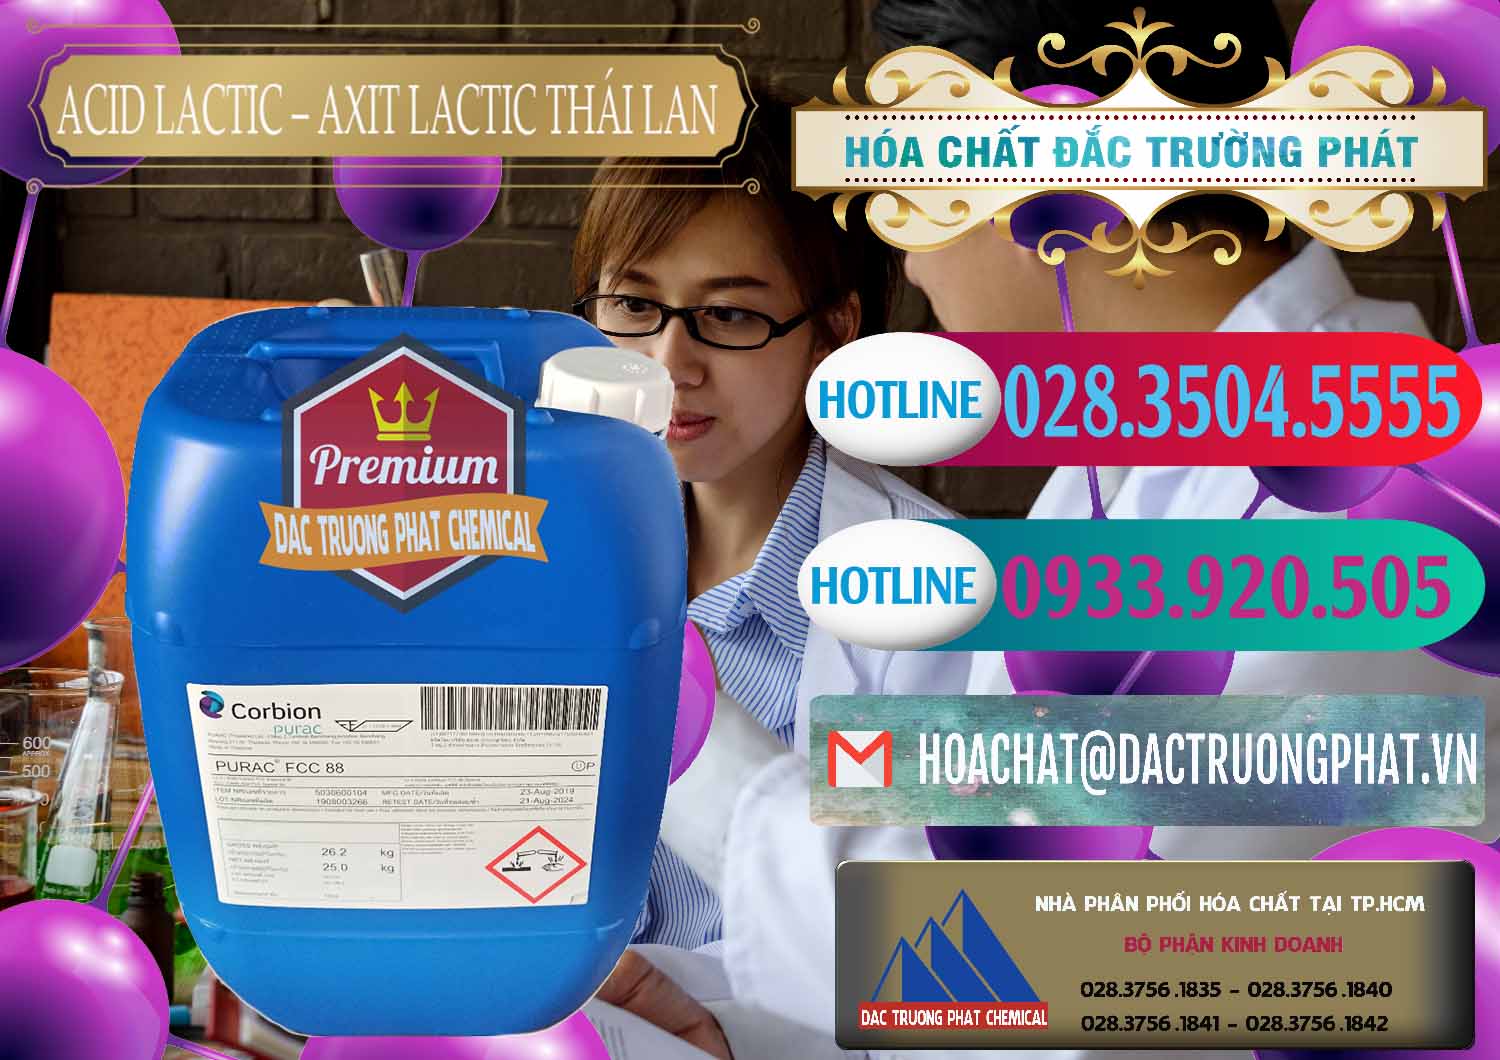 Cty chuyên bán và cung ứng Acid Lactic – Axit Lactic Thái Lan Purac FCC 88 - 0012 - Công ty cung cấp ( phân phối ) hóa chất tại TP.HCM - truongphat.vn